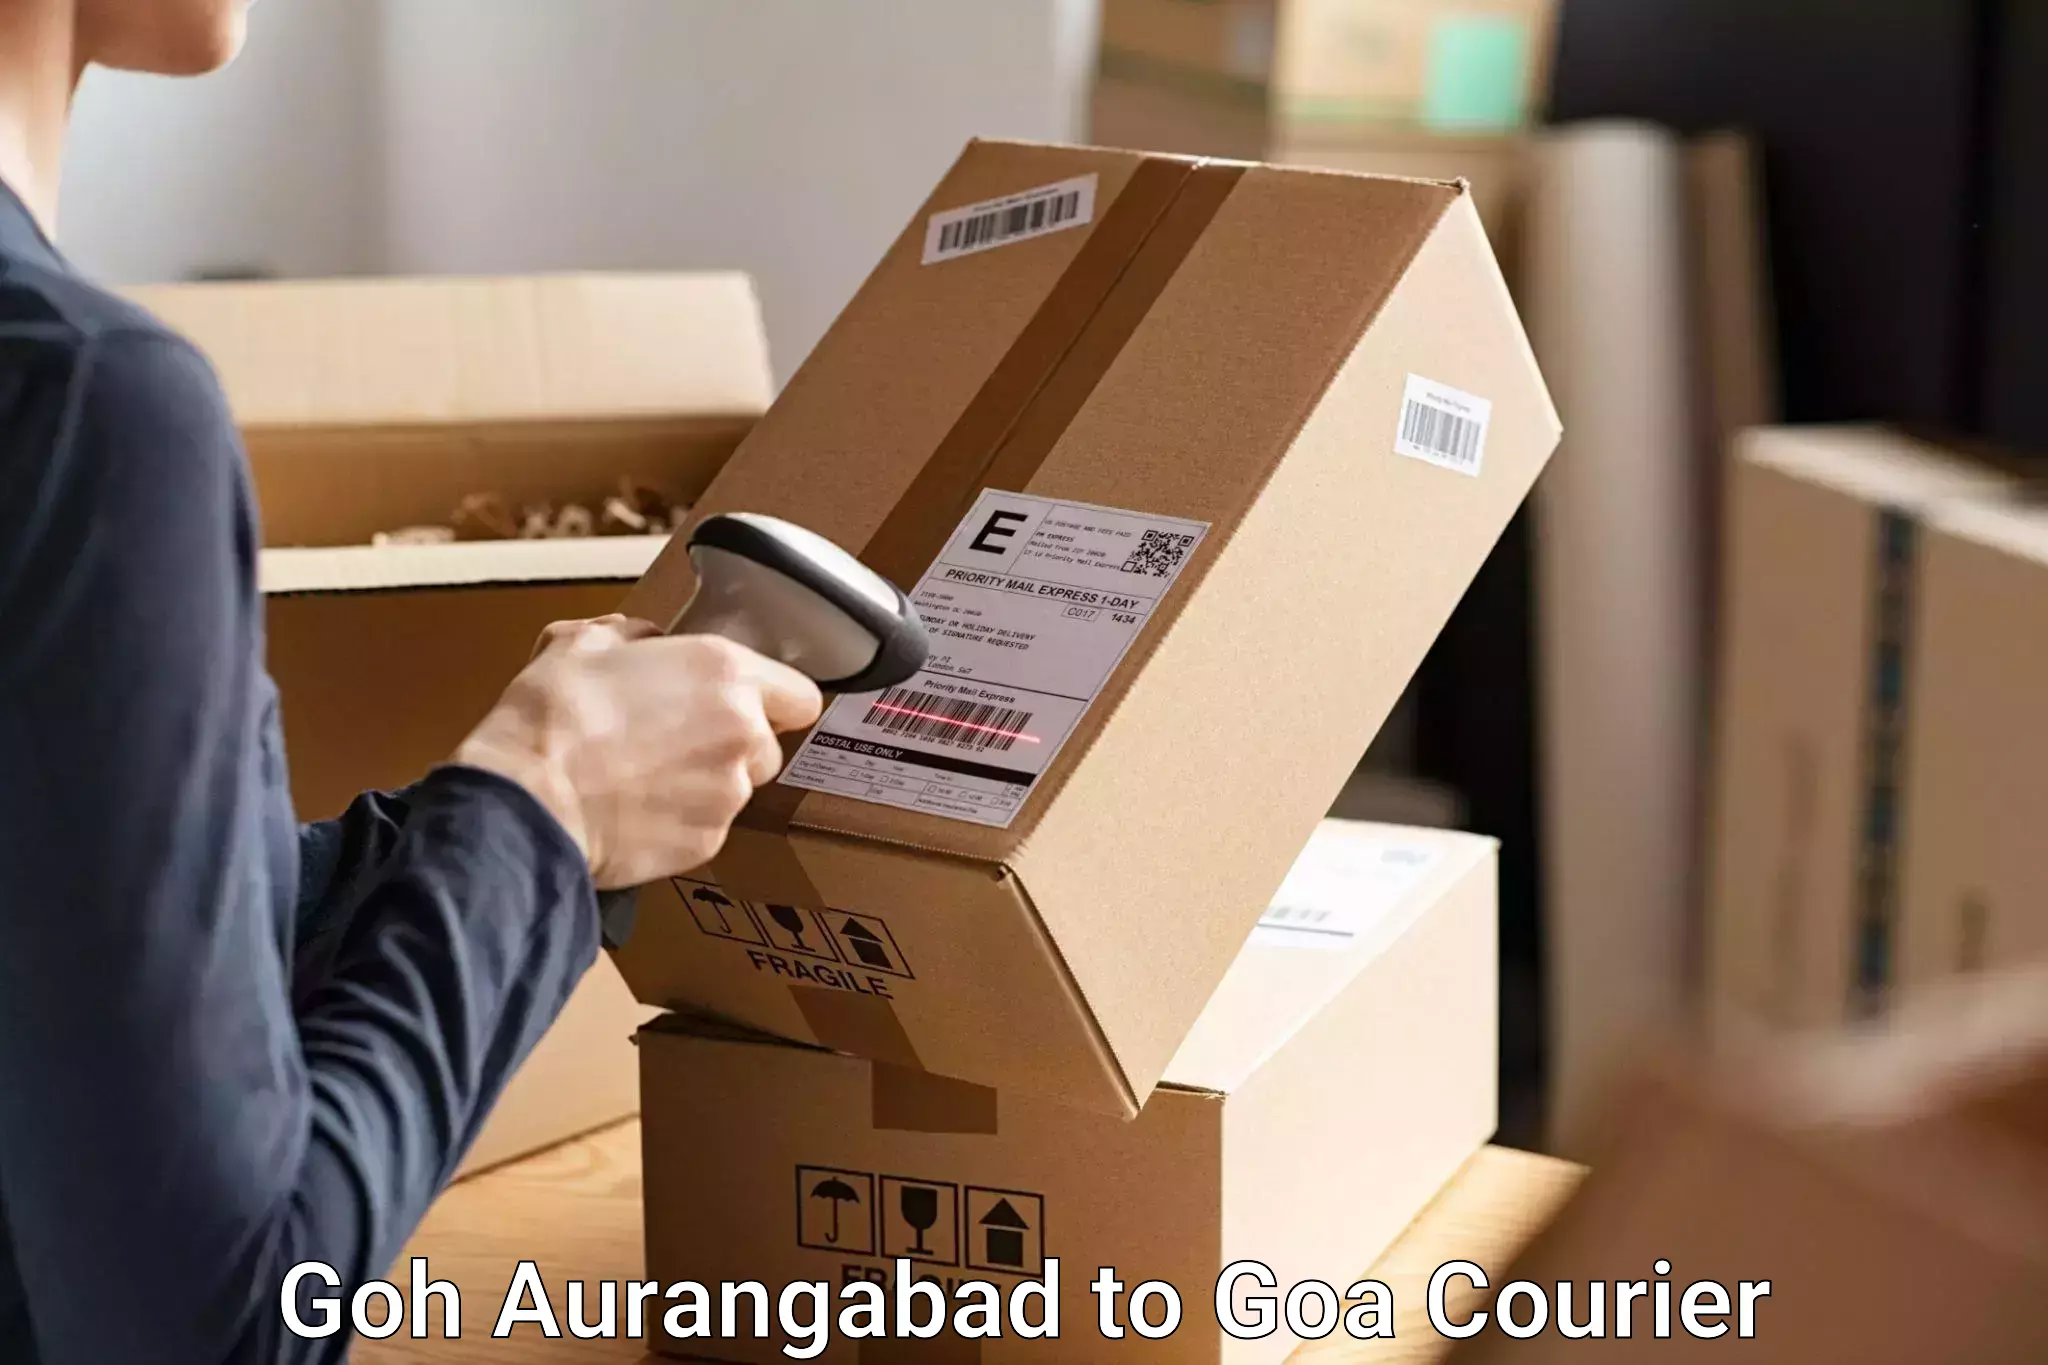 Luggage transport company Goh Aurangabad to Goa